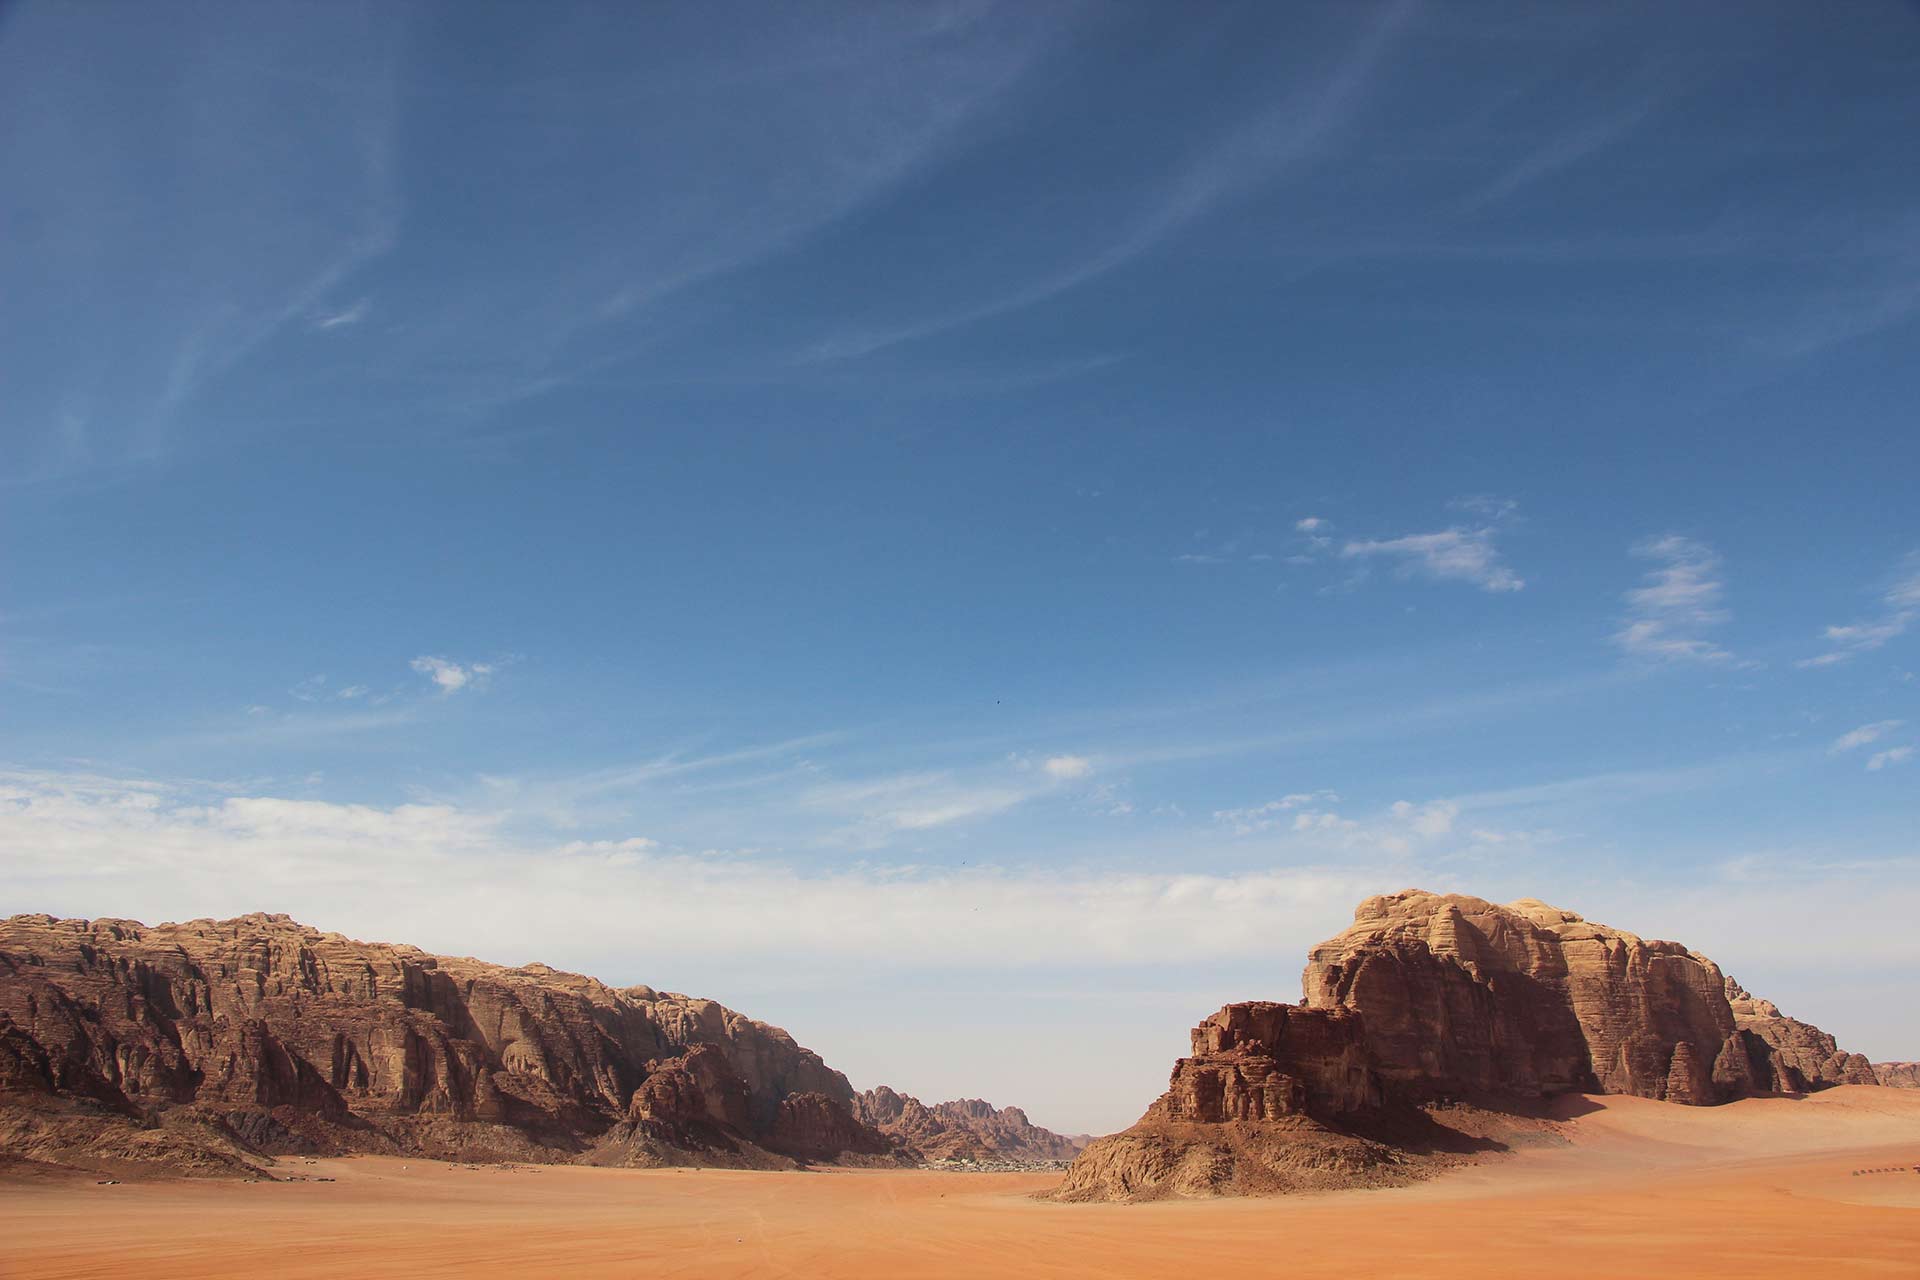 Panoramic scenery in the deserts of Wadi Rum, Jordan